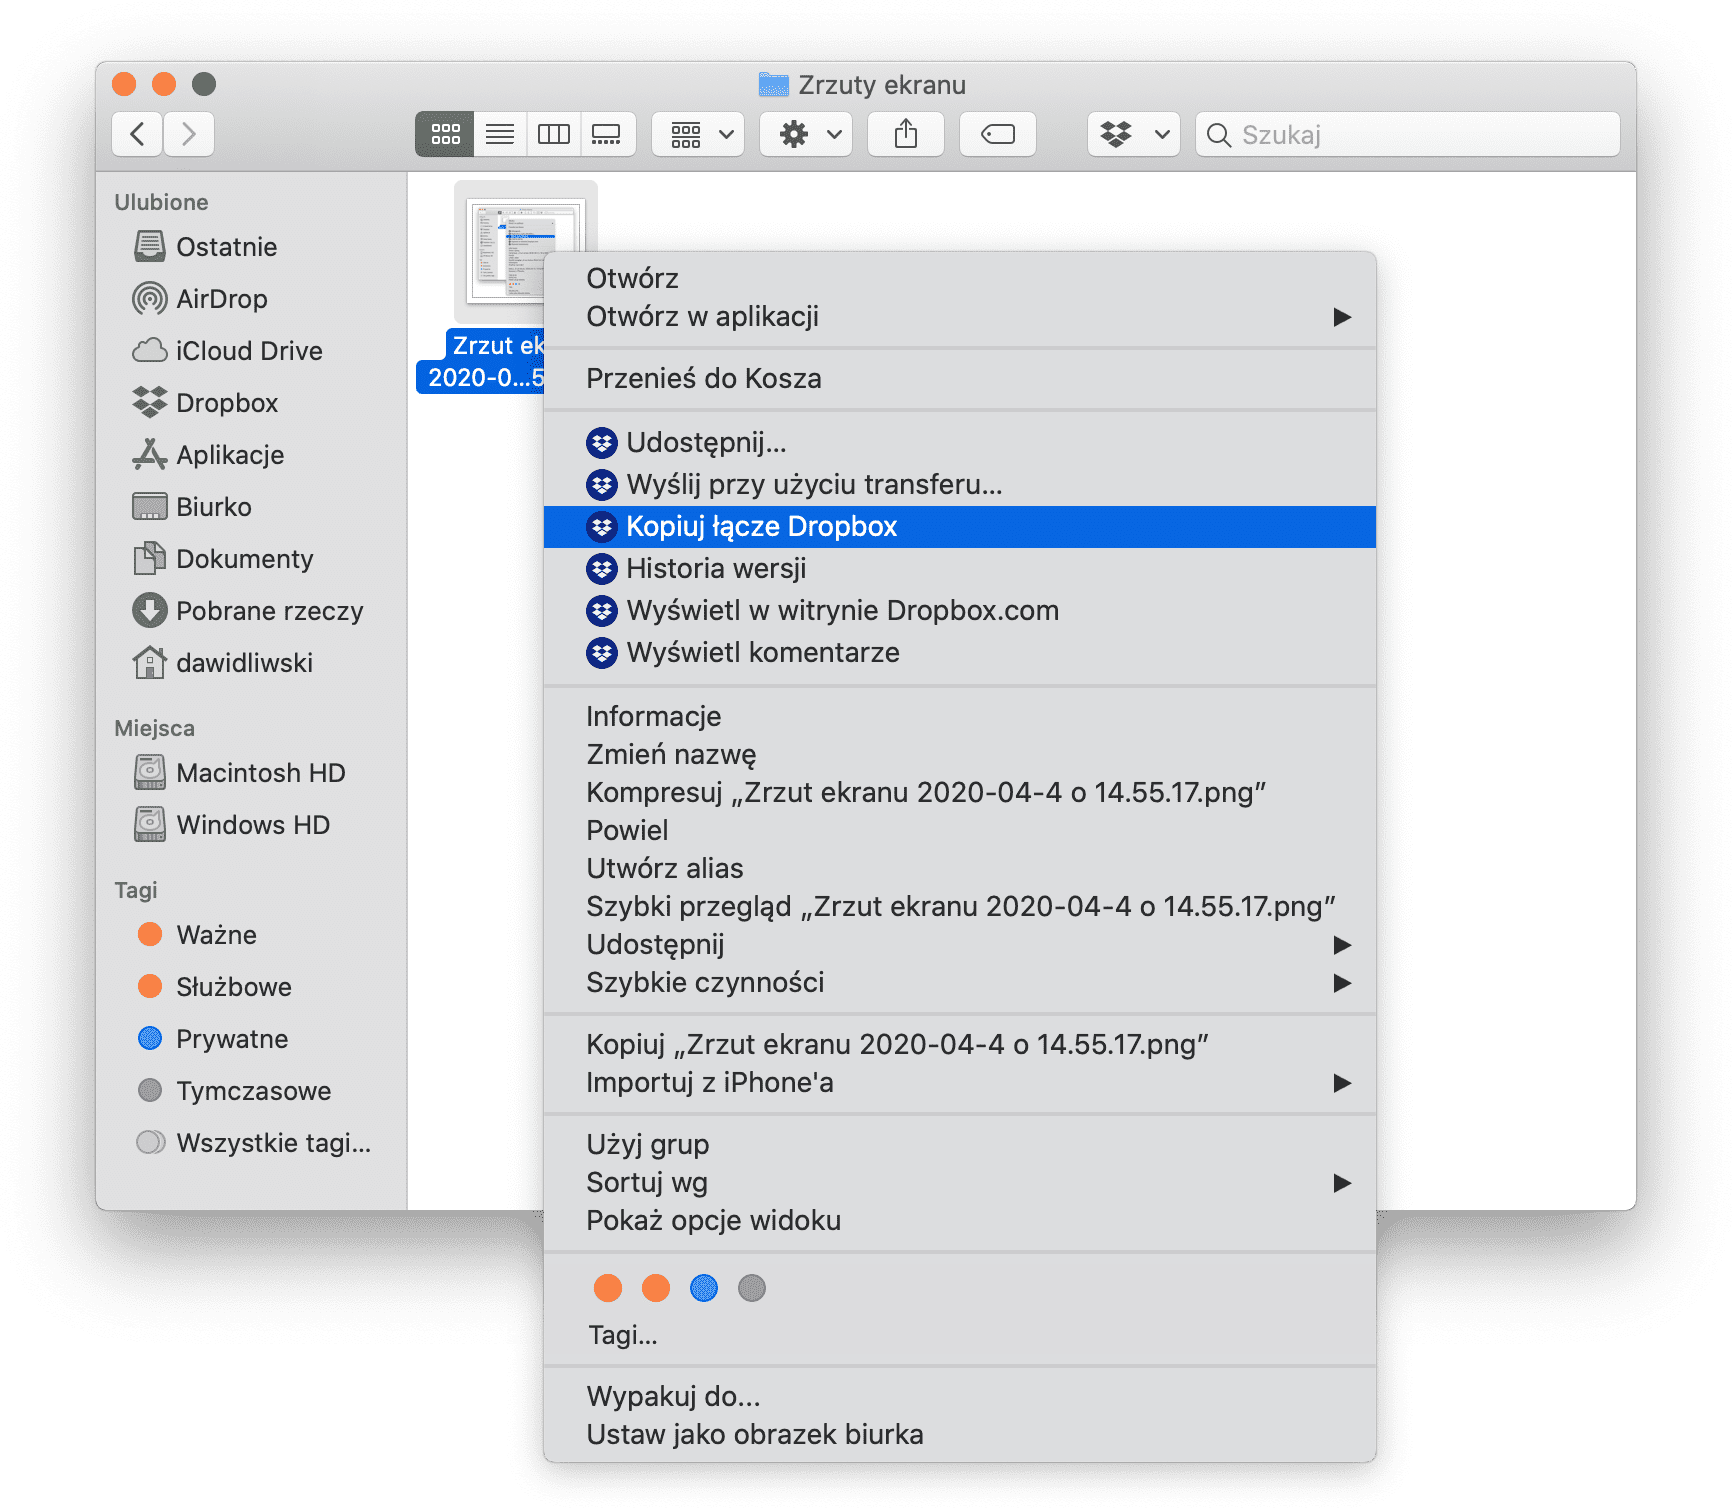 Dropbox i AppleScript - udostępnianie bezpośredniego linku do pliku poradniki, polecane, ciekawostki scrypt, Dropbox, bezpośredni link  Miałem długą przerwę w używaniu Dropbox, bodajże od 2016 r., z powodu wyłączenia publicznych linków. Nie archiwizowałem tam danych, nie przenosiłem pomiędzy urządzeniami - na ogół udostępniałem pliki innym osobom poprzez wysłanie bezpośredniego linku. Zrzut ekranu 2020 04 4 o 14.59.45